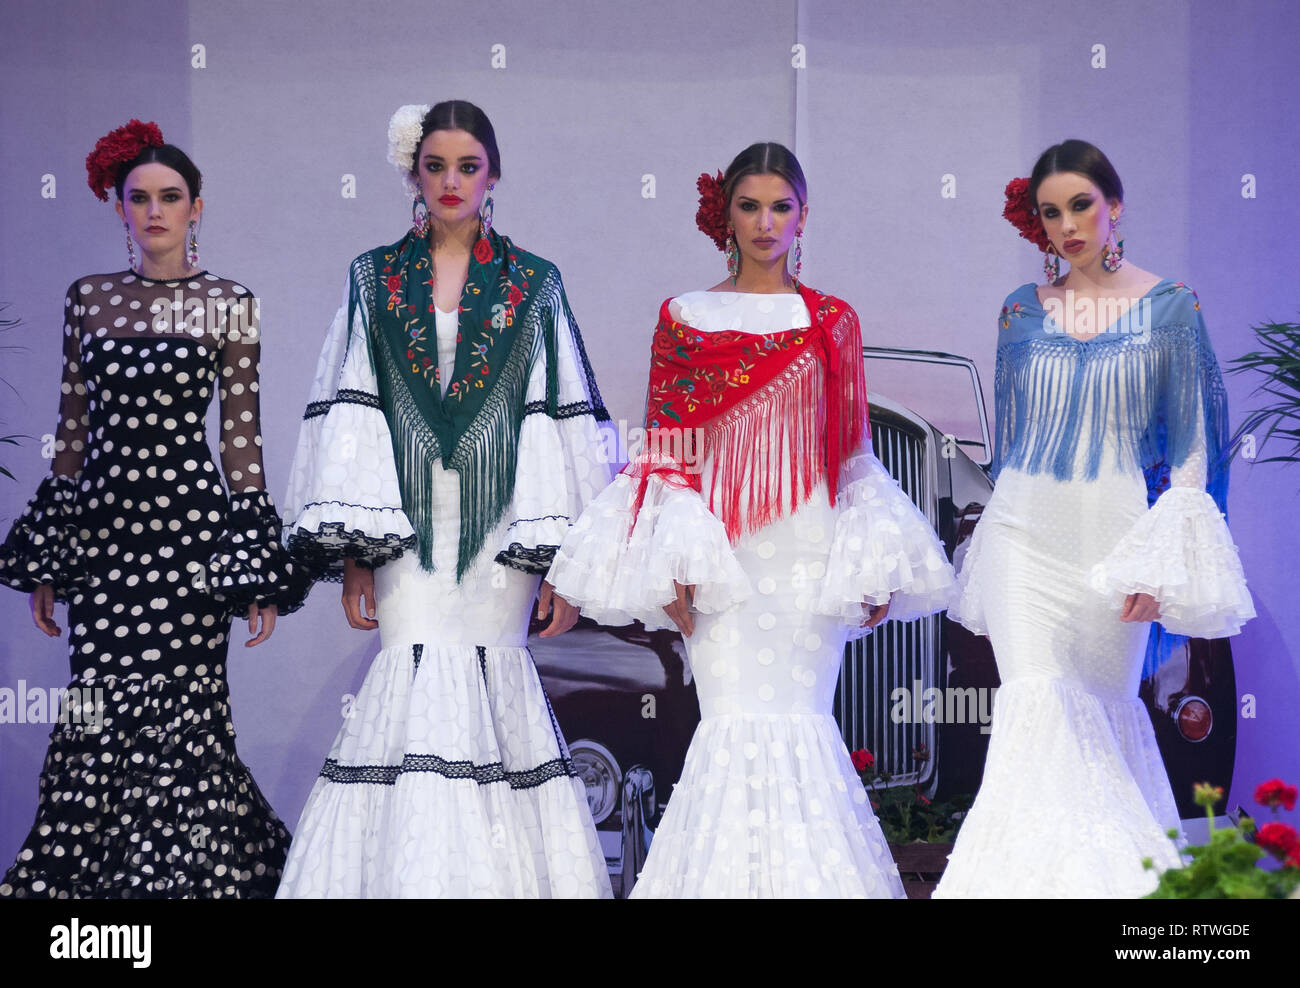 Málaga, Málaga, España. 2 Mar, 2019. Modelos vistos luciendo trajes de flamenca posando para los fotógrafos en la durante la IV Feria de la Moda Flamenca (FIMAF) en el hotel